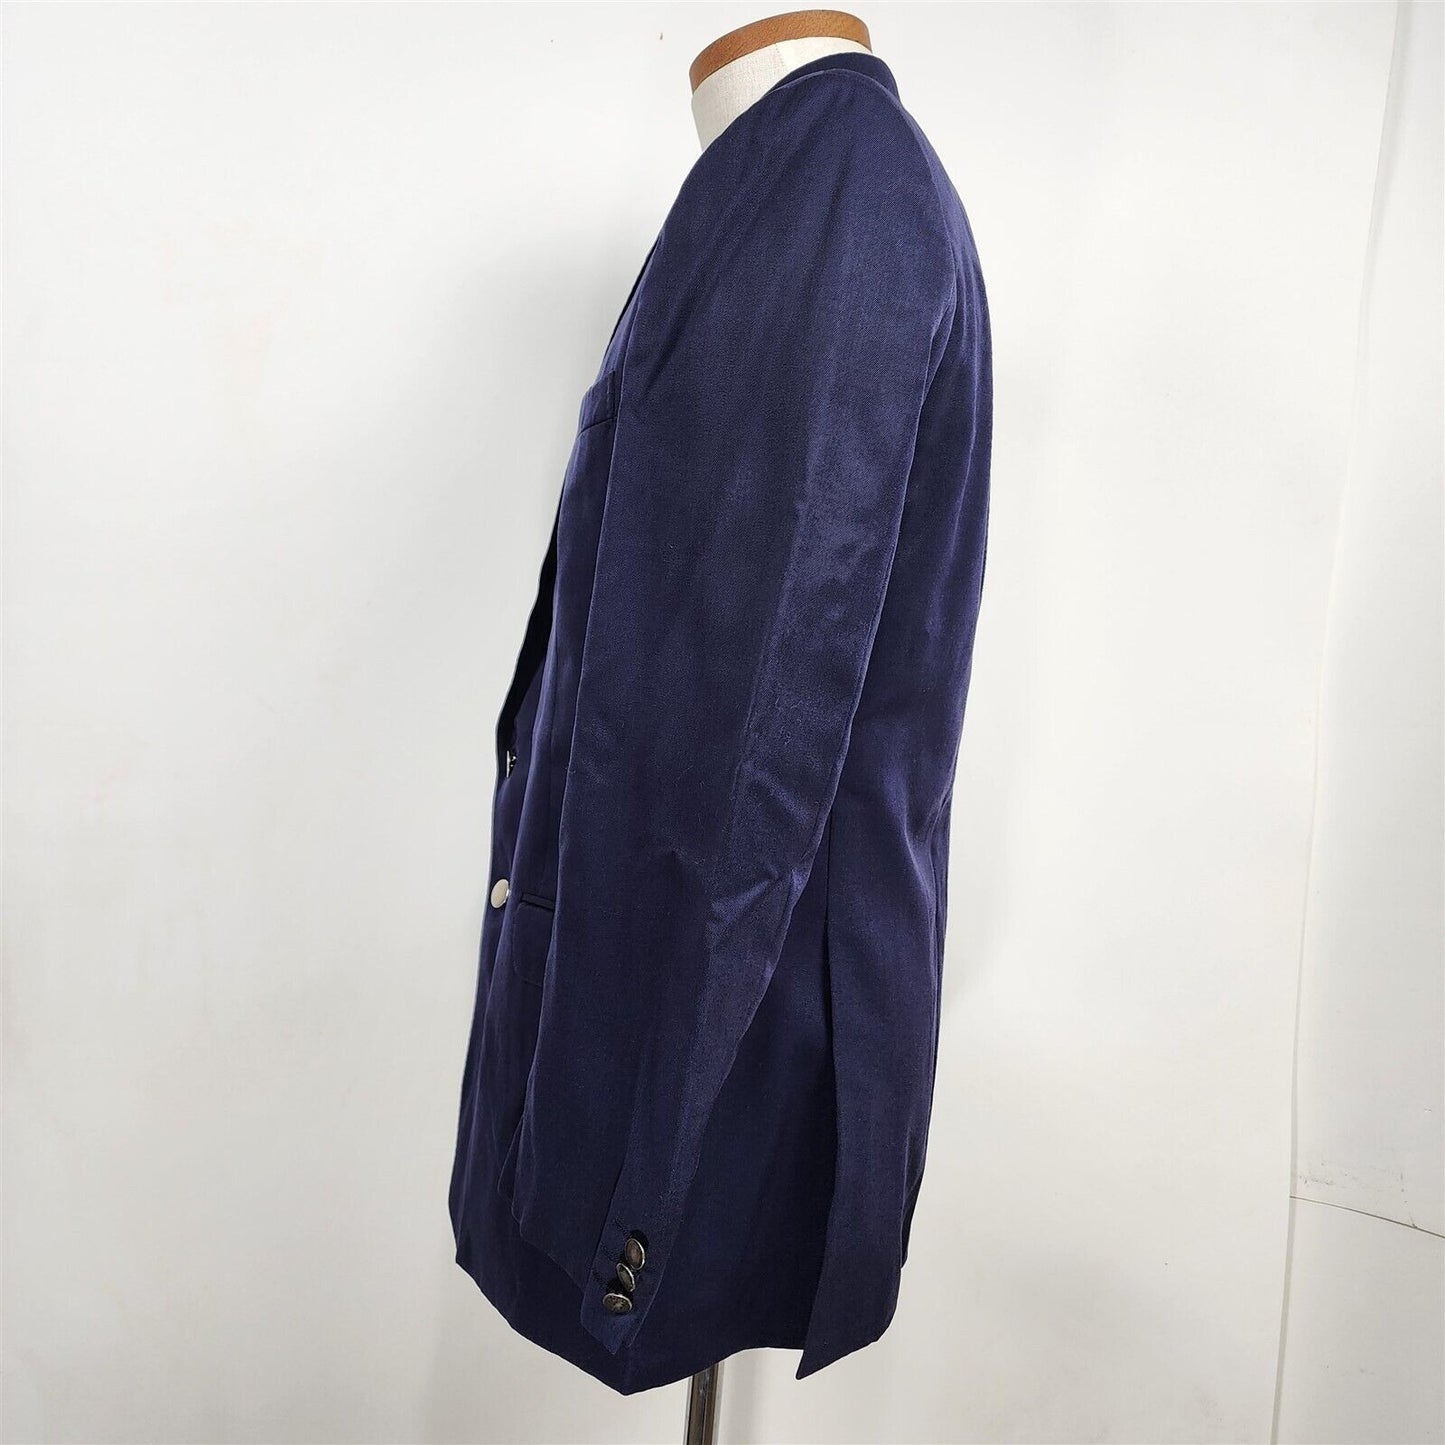 Vintage Navy Blue Wool 2 Button Suit Jacket Sport Coat Size 40 Reg